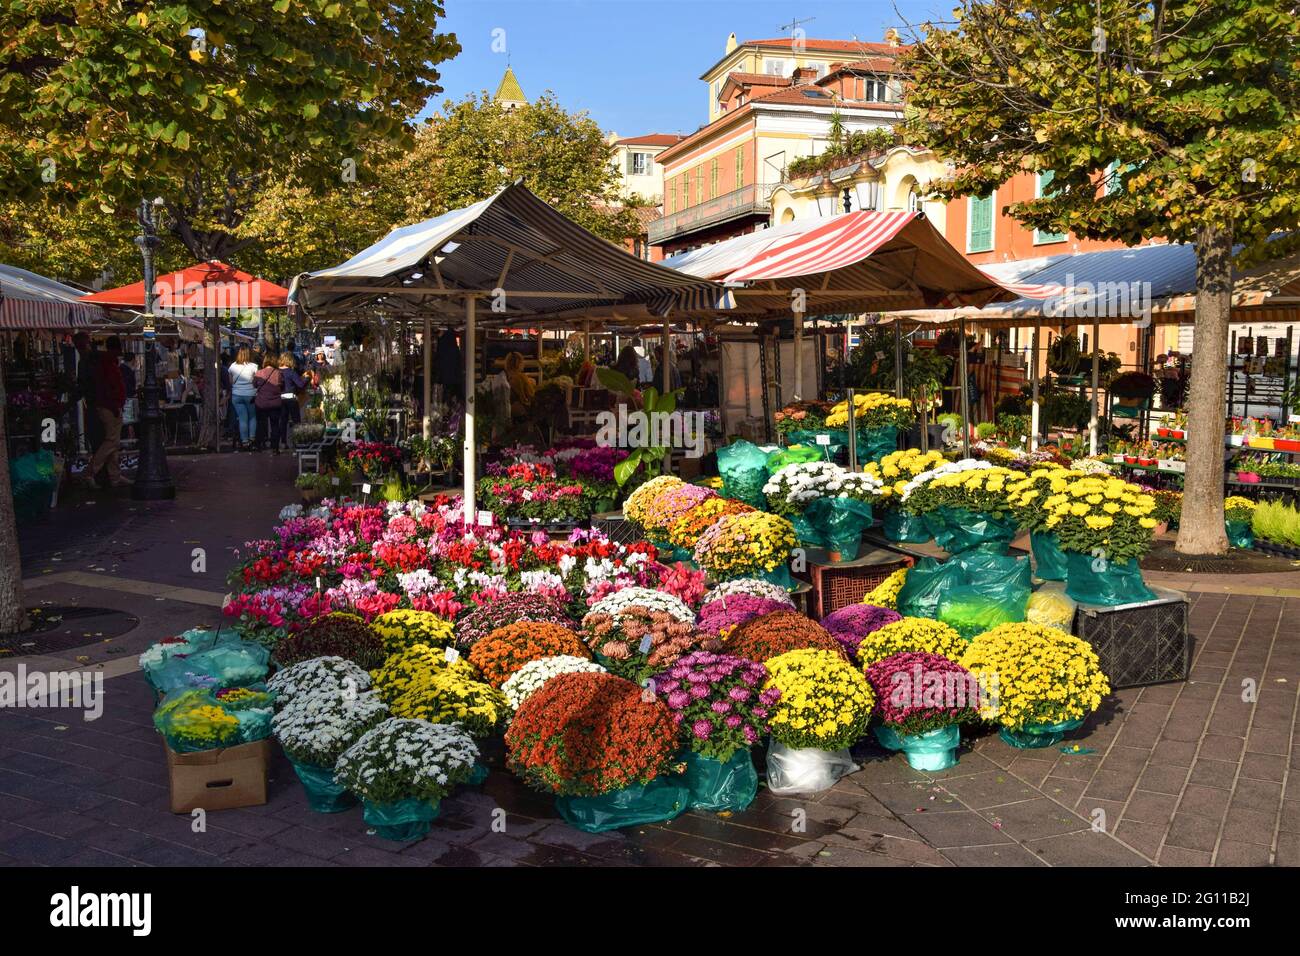 Blumenmarkt in Cours Saleya, Nizza, Südfrankreich Stockfotografie - Alamy